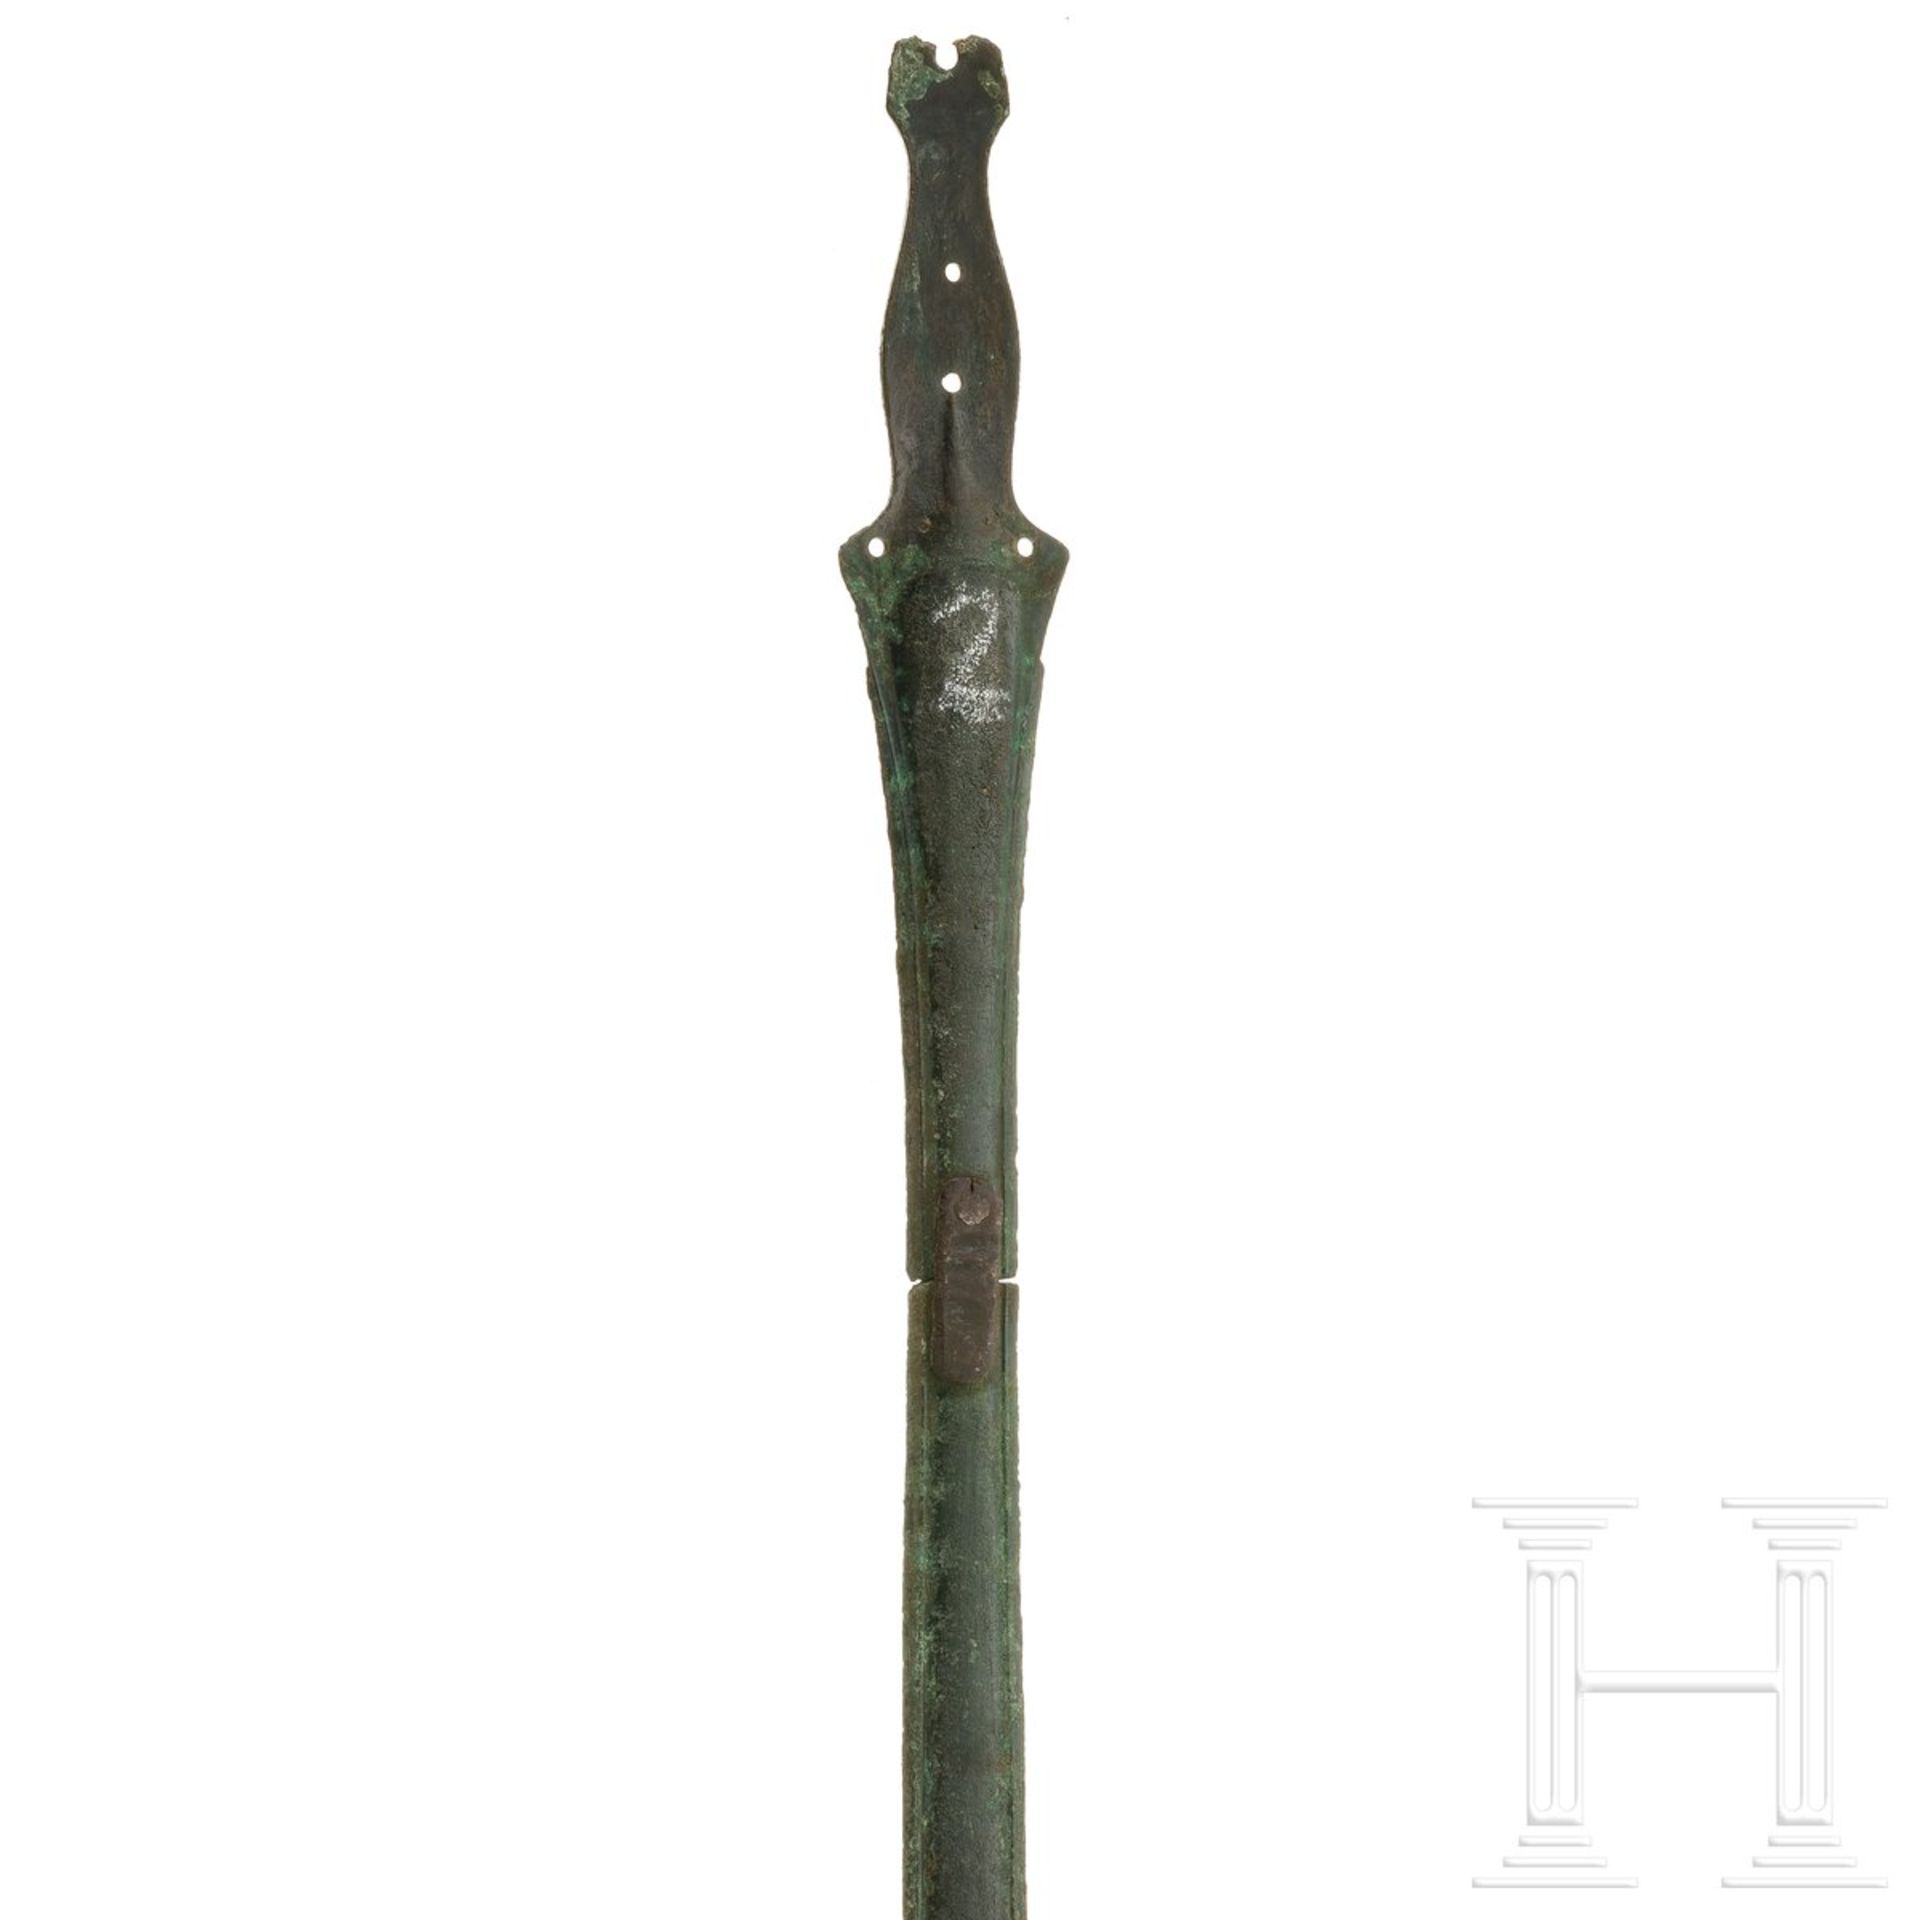 Bronzenes Griffzungenschwert vom Typ Lengenfeld (Stufe Hallstatt C), 8. Jhdt. v. Chr. - Image 3 of 3